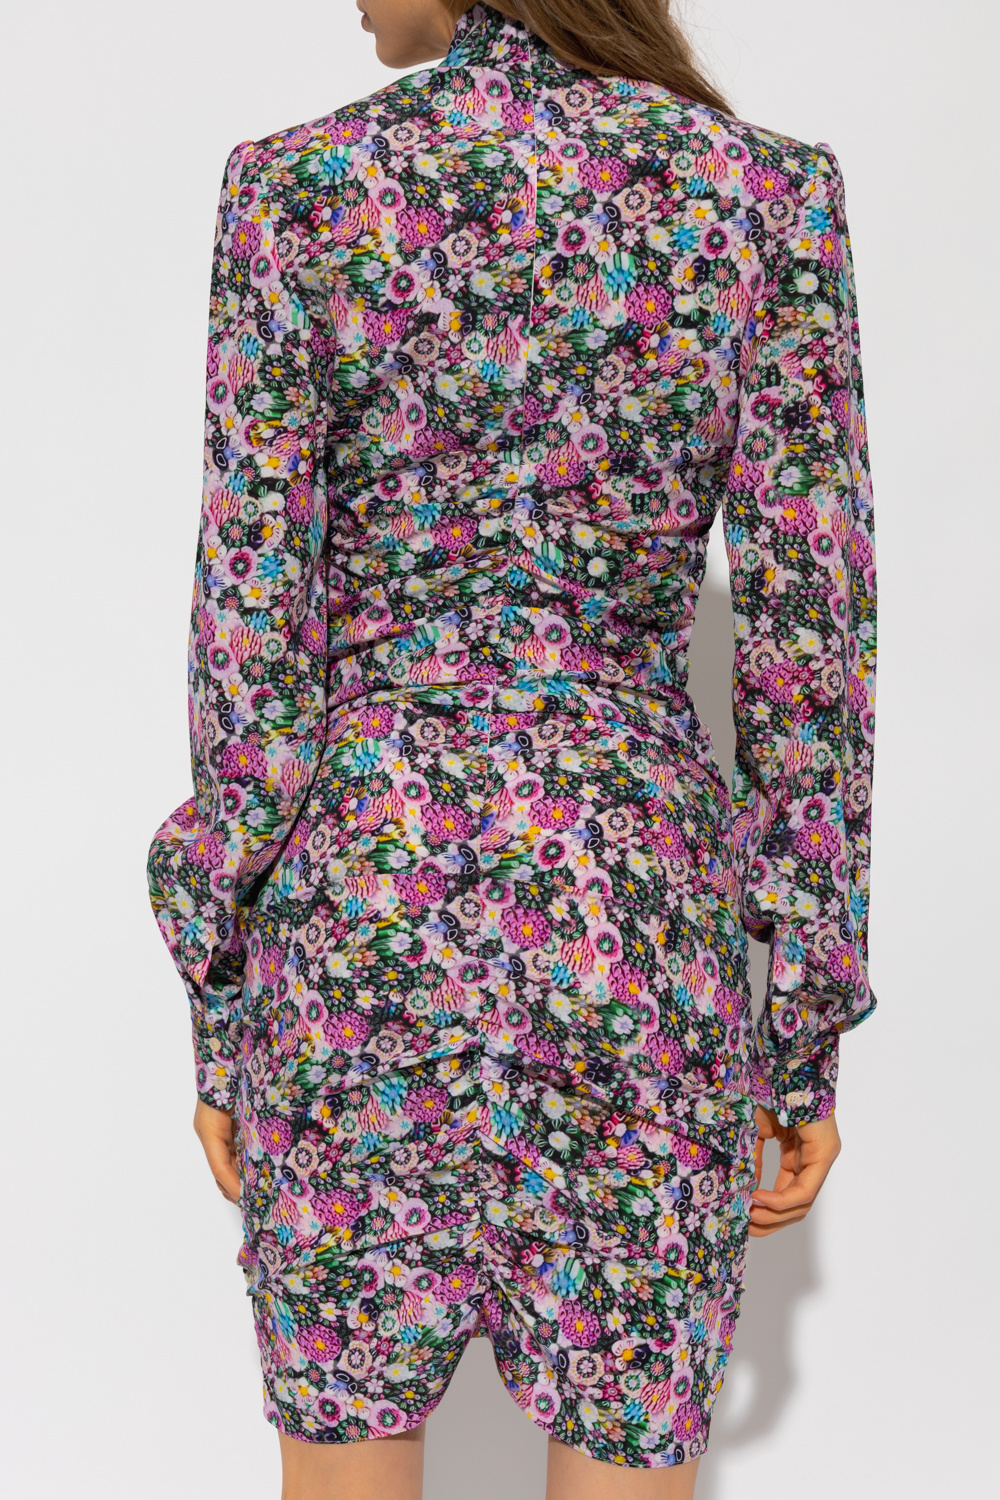 Isabel Marant ‘Sandrine’ floral dress